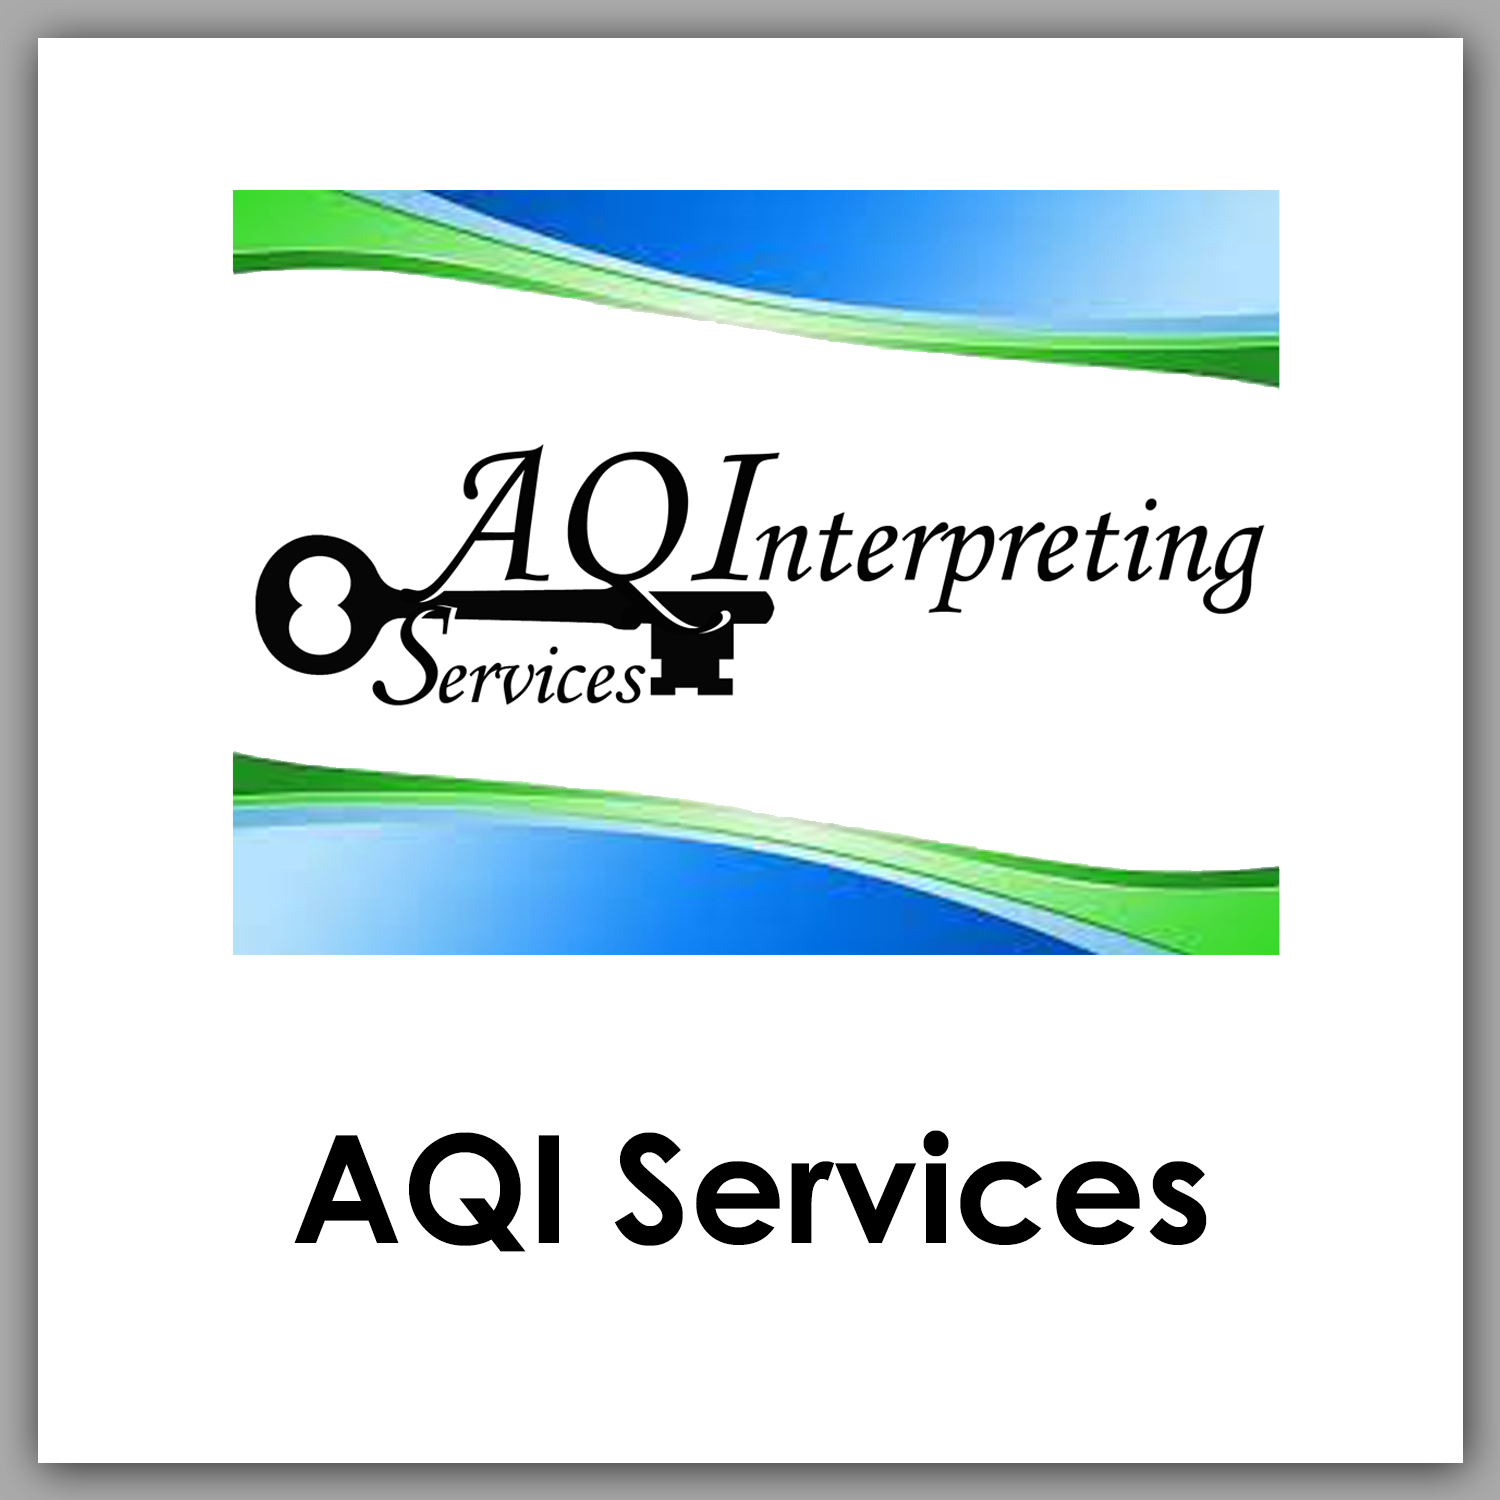 AQI Services Interpreting